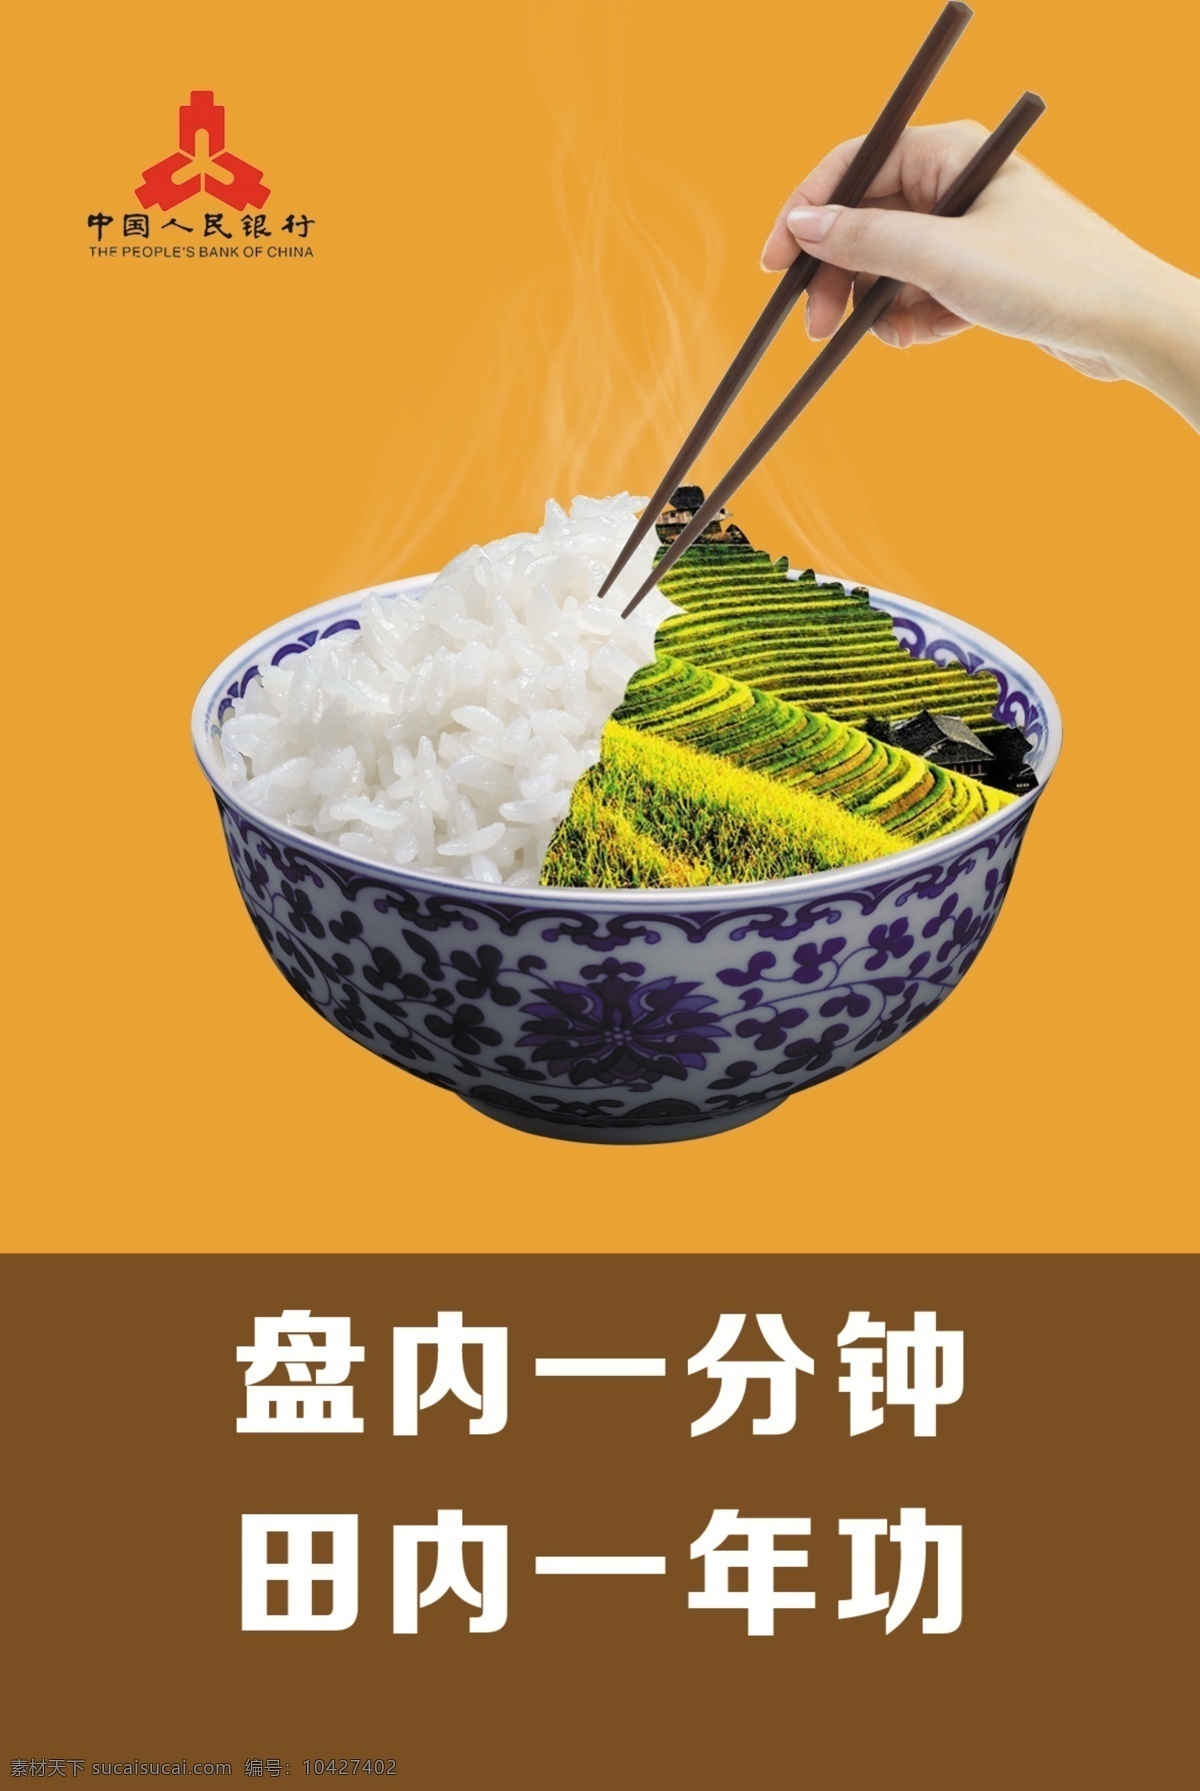 粮食文化 粮食 节约粮食 米饭 饭 节粮 传统文化 文化艺术 橙色